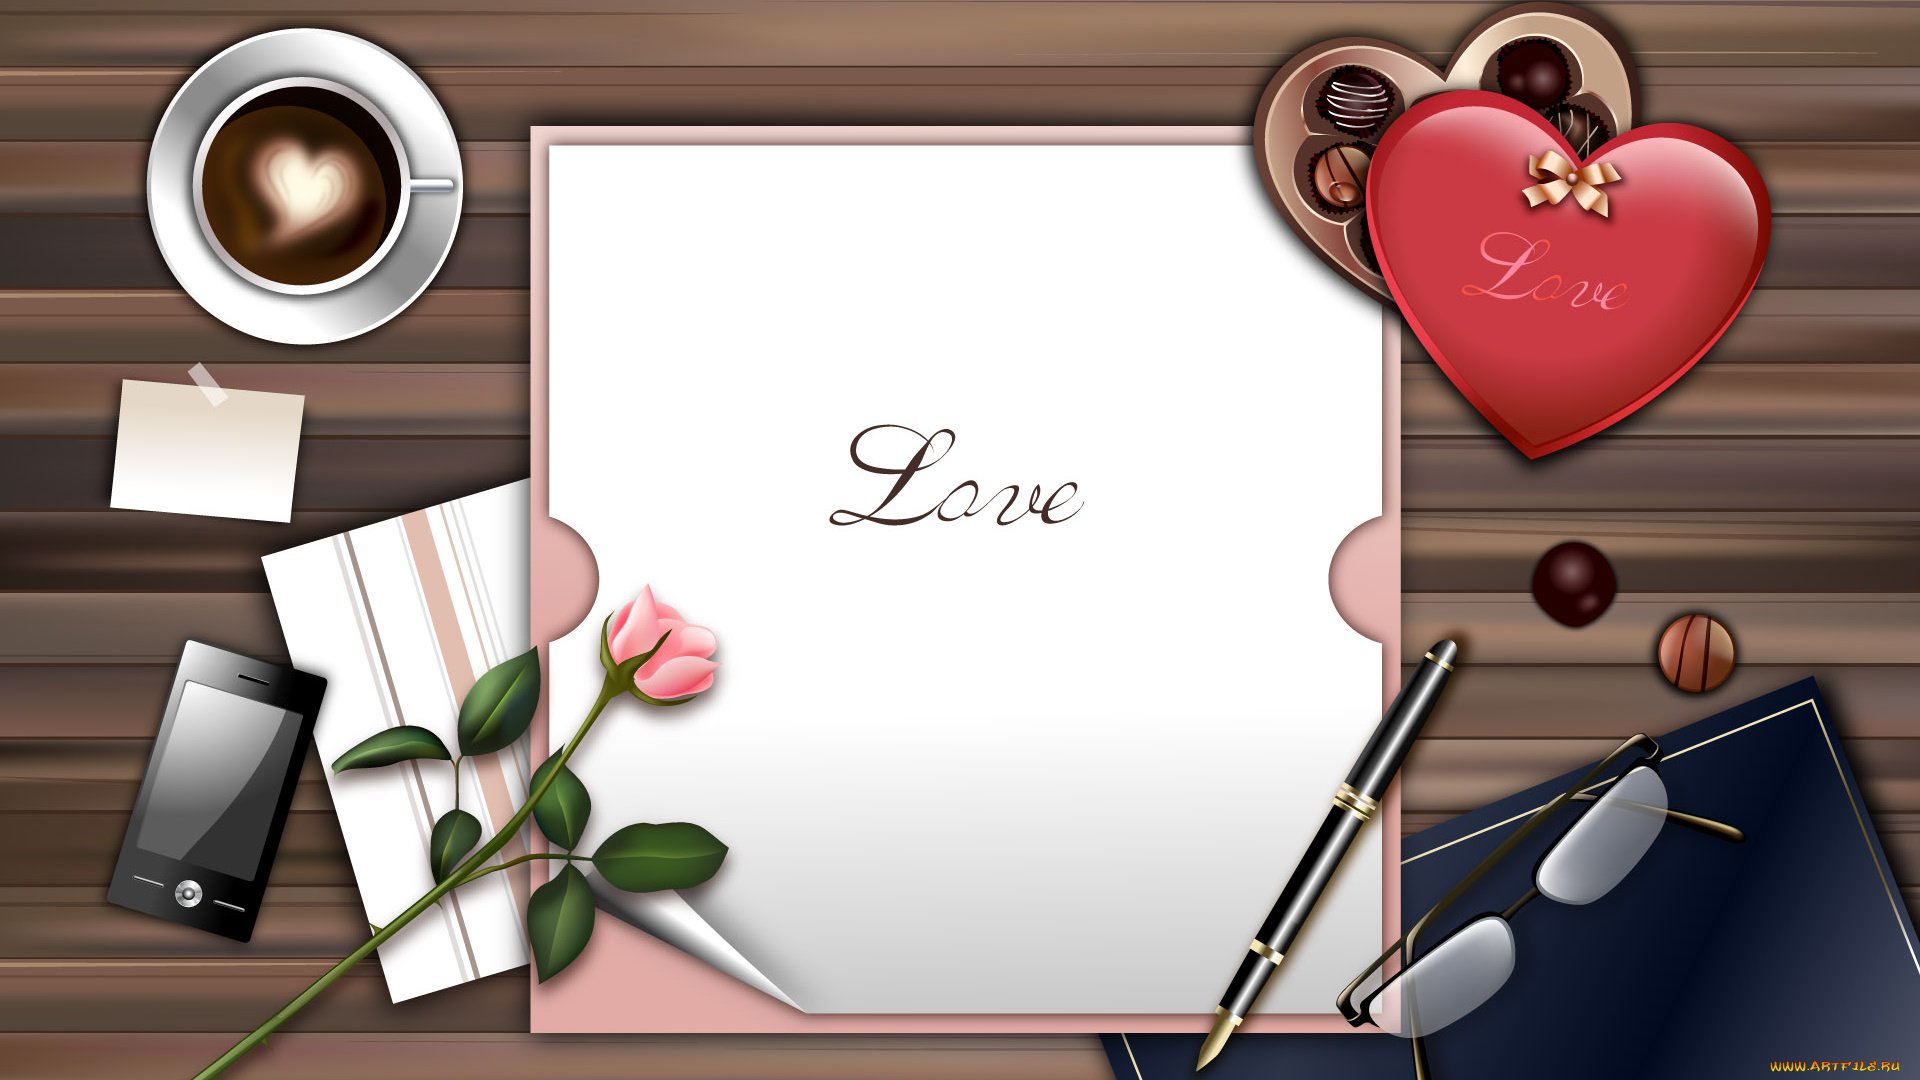 праздничные, день, святого, валентина, , сердечки, , любовь, кофе, блюдце, очки, коробка, чашка, стол, бумага, конфеты, телефон, цветок, роза, ручка, сердечко, любовь, письмо